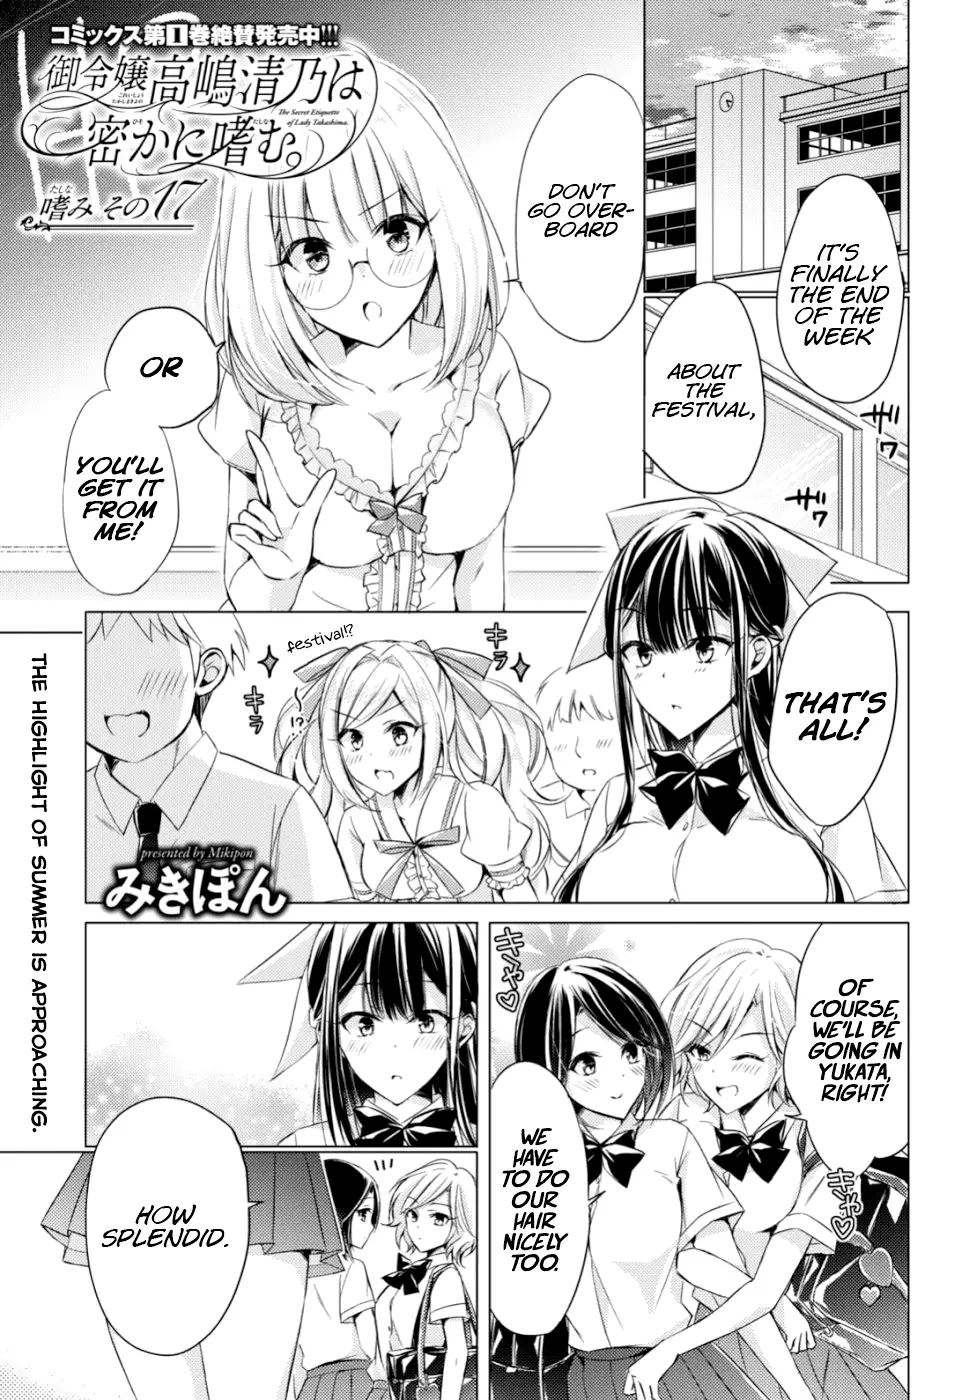 The Secret Etiquette Of Lady Takashima. - 17 page 1-c79d40b3